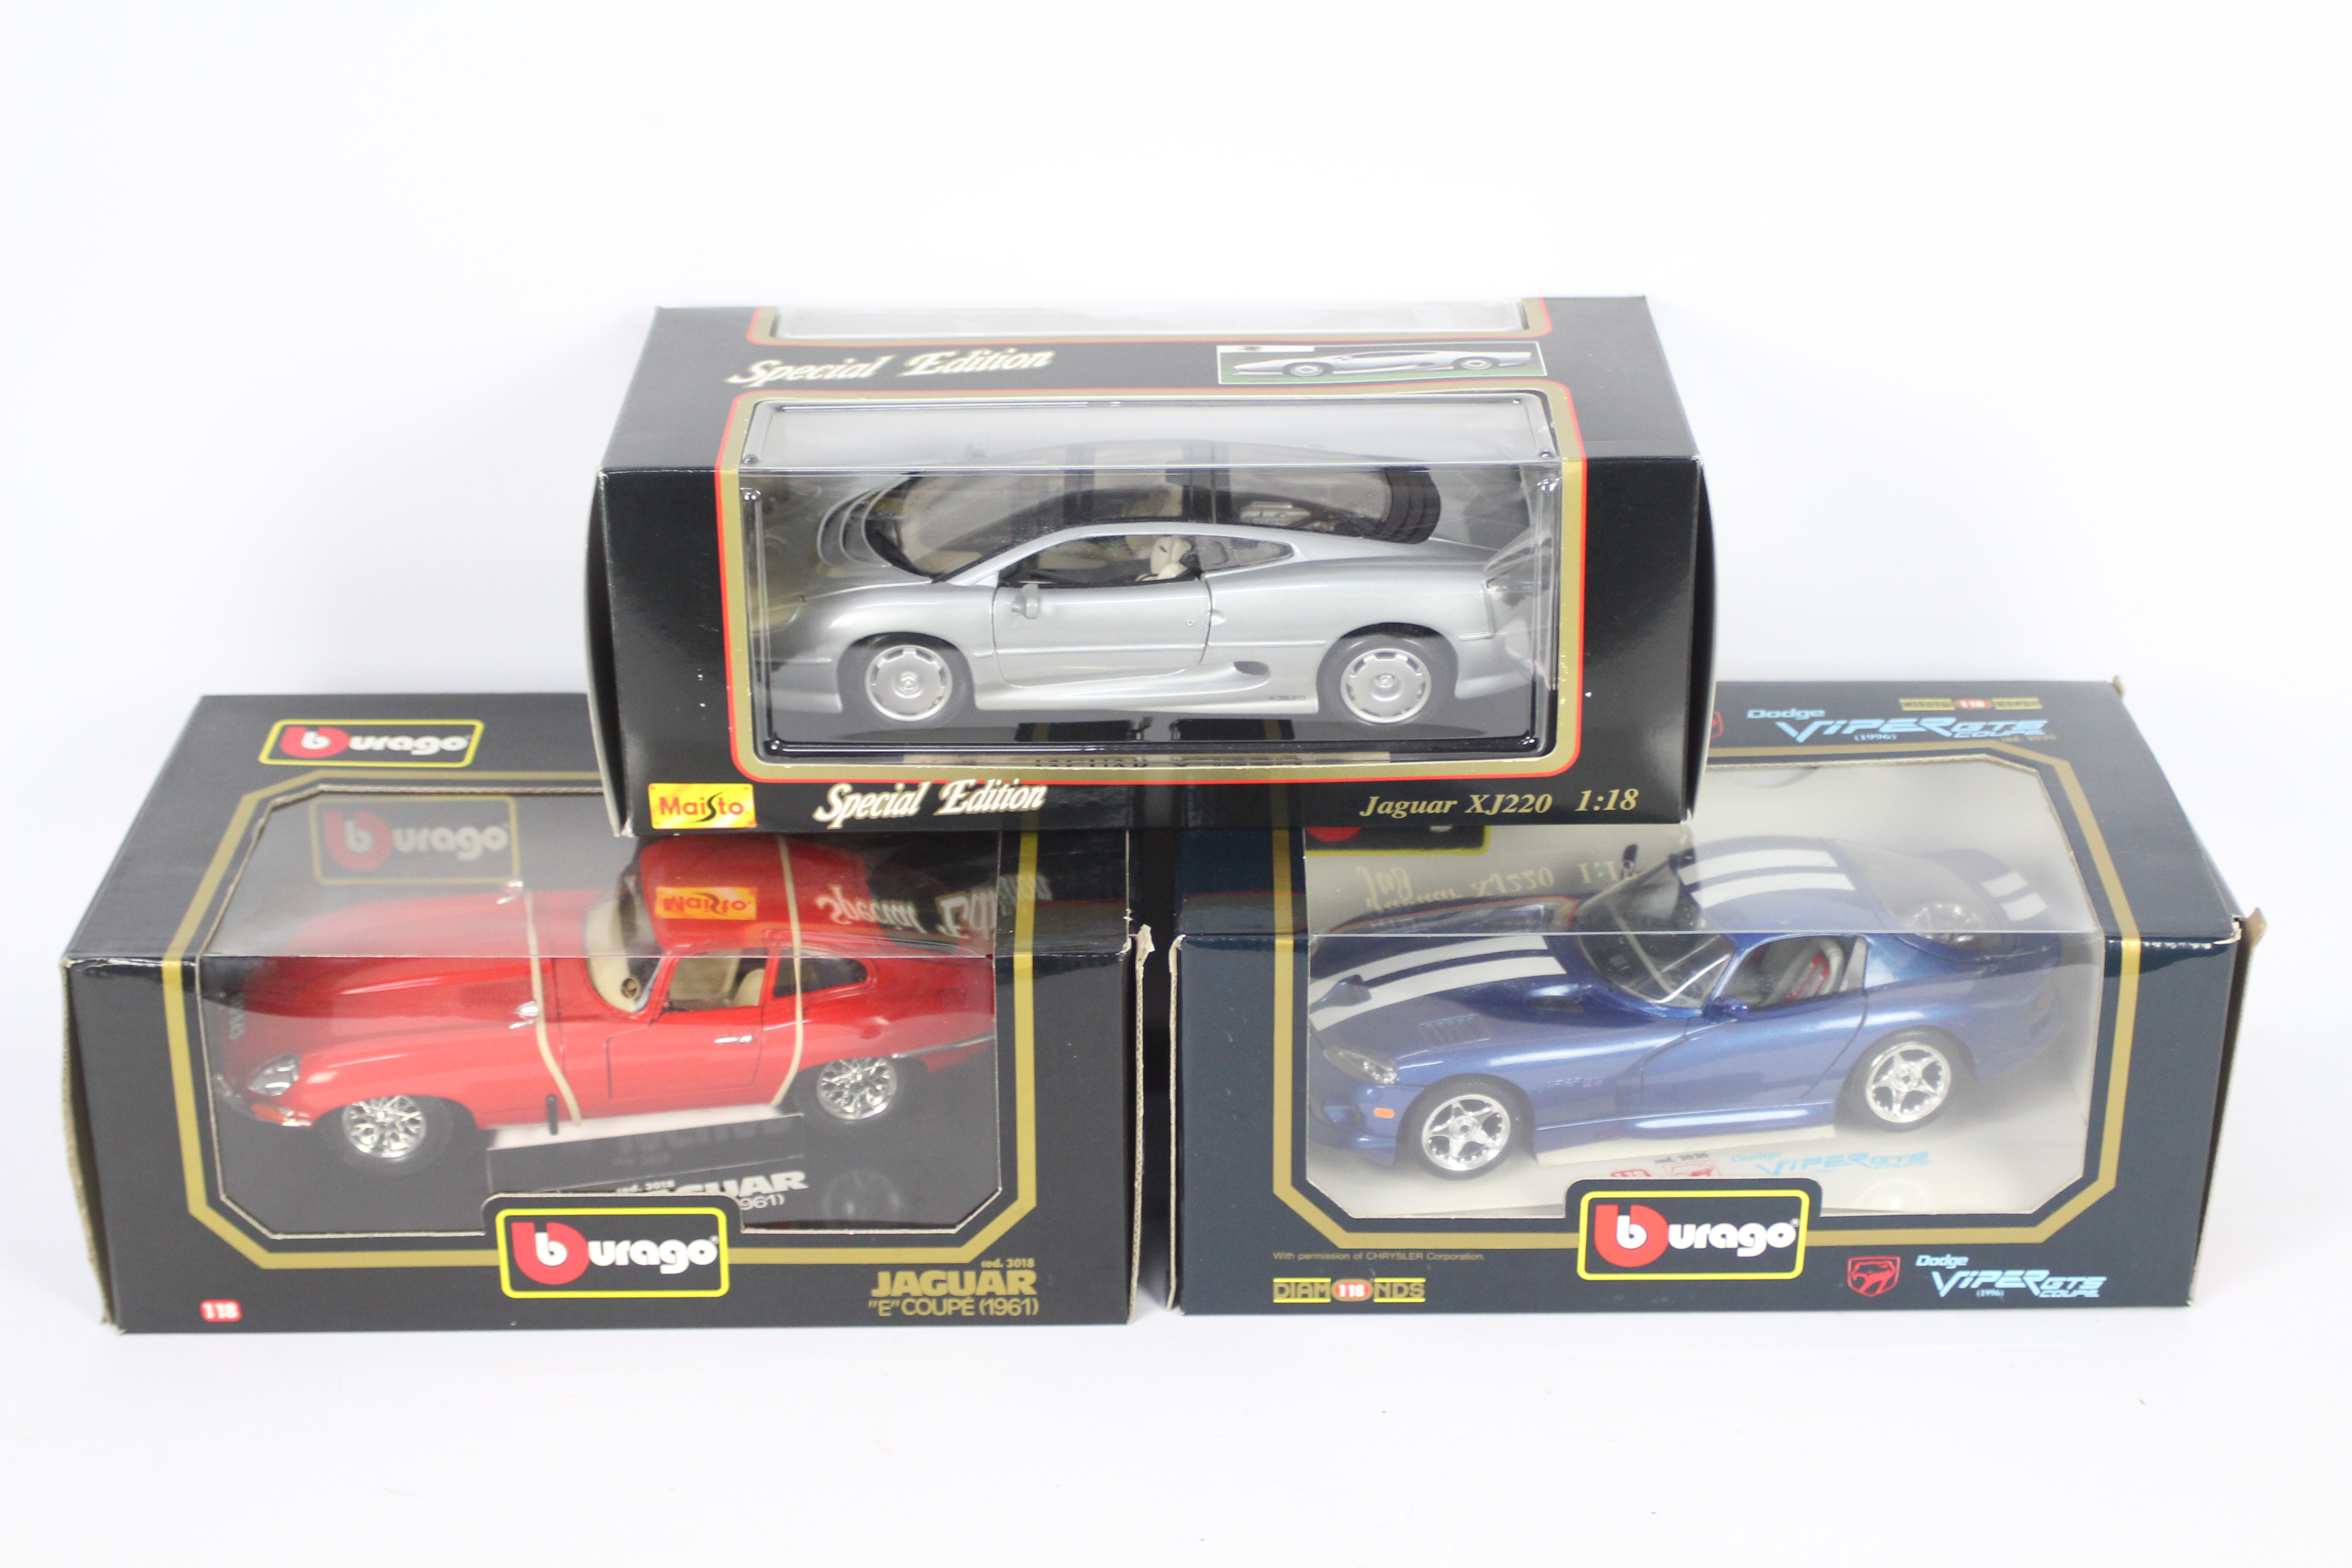 Bbuarago - Masito - 3 x boxed cars in 1:18 scale, Jaguar E Type Coupe # 3018,